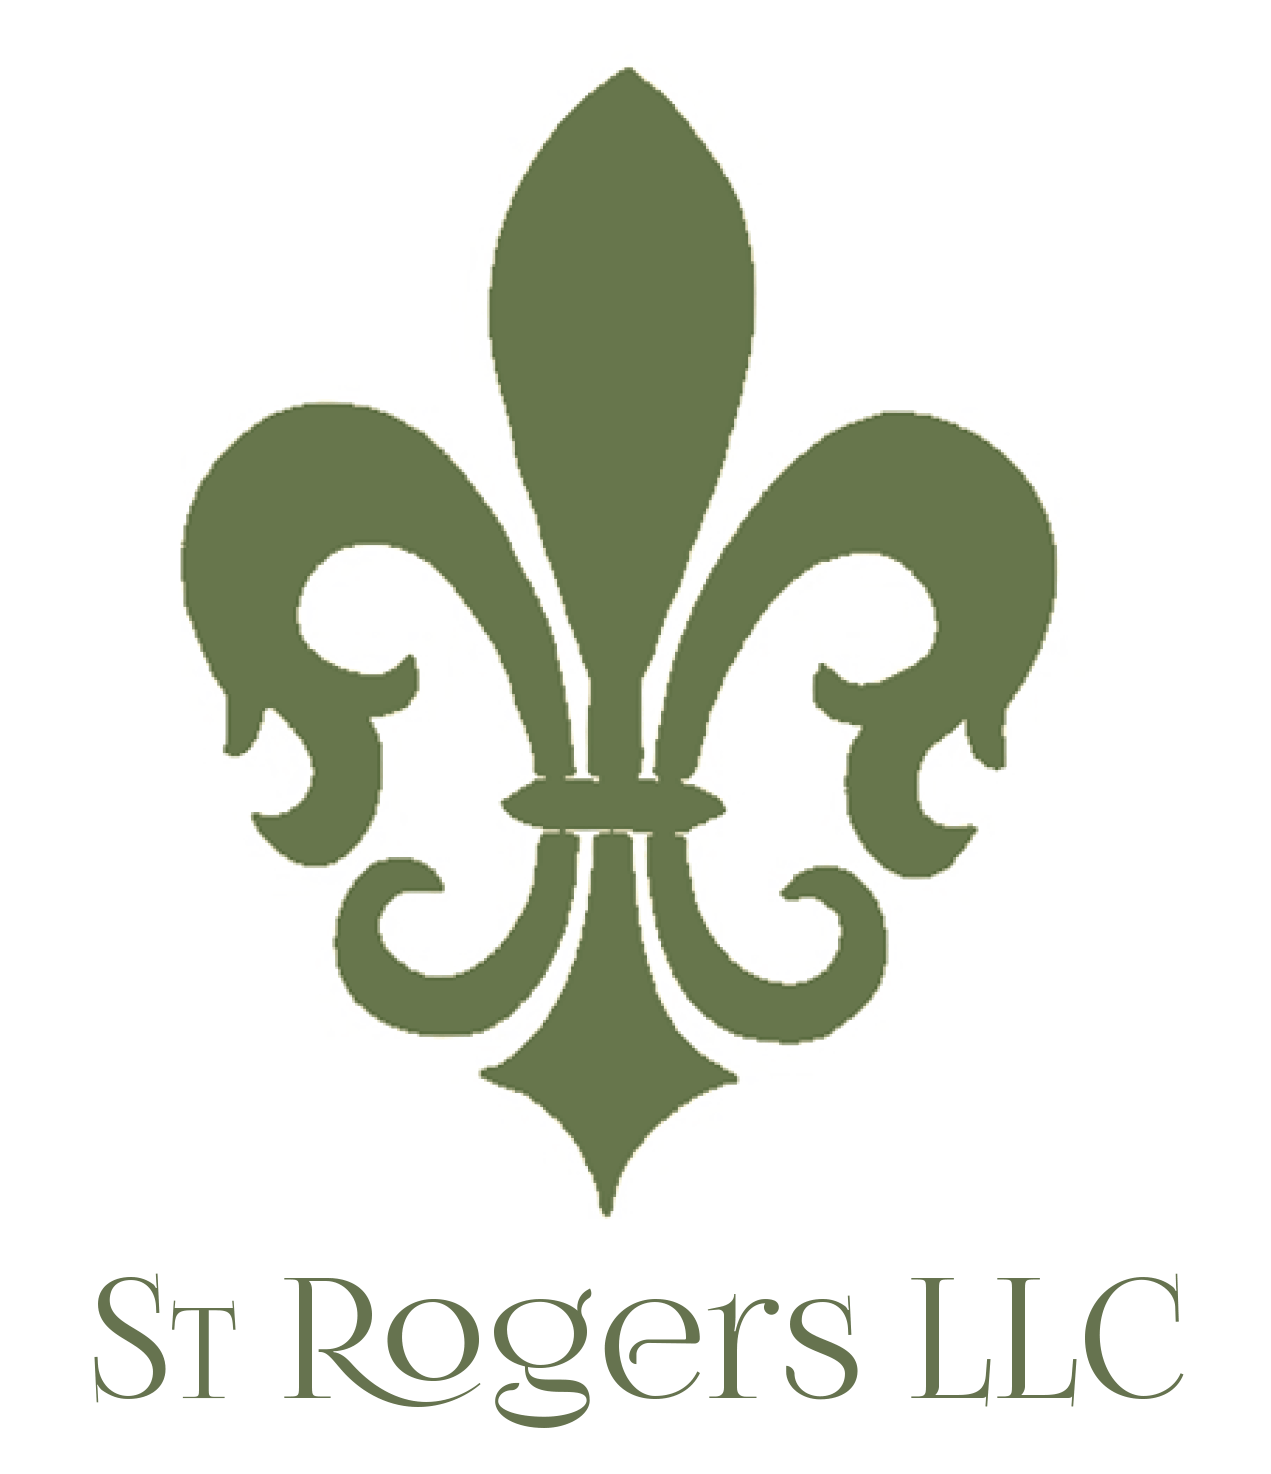 St Rogers LLC Logo